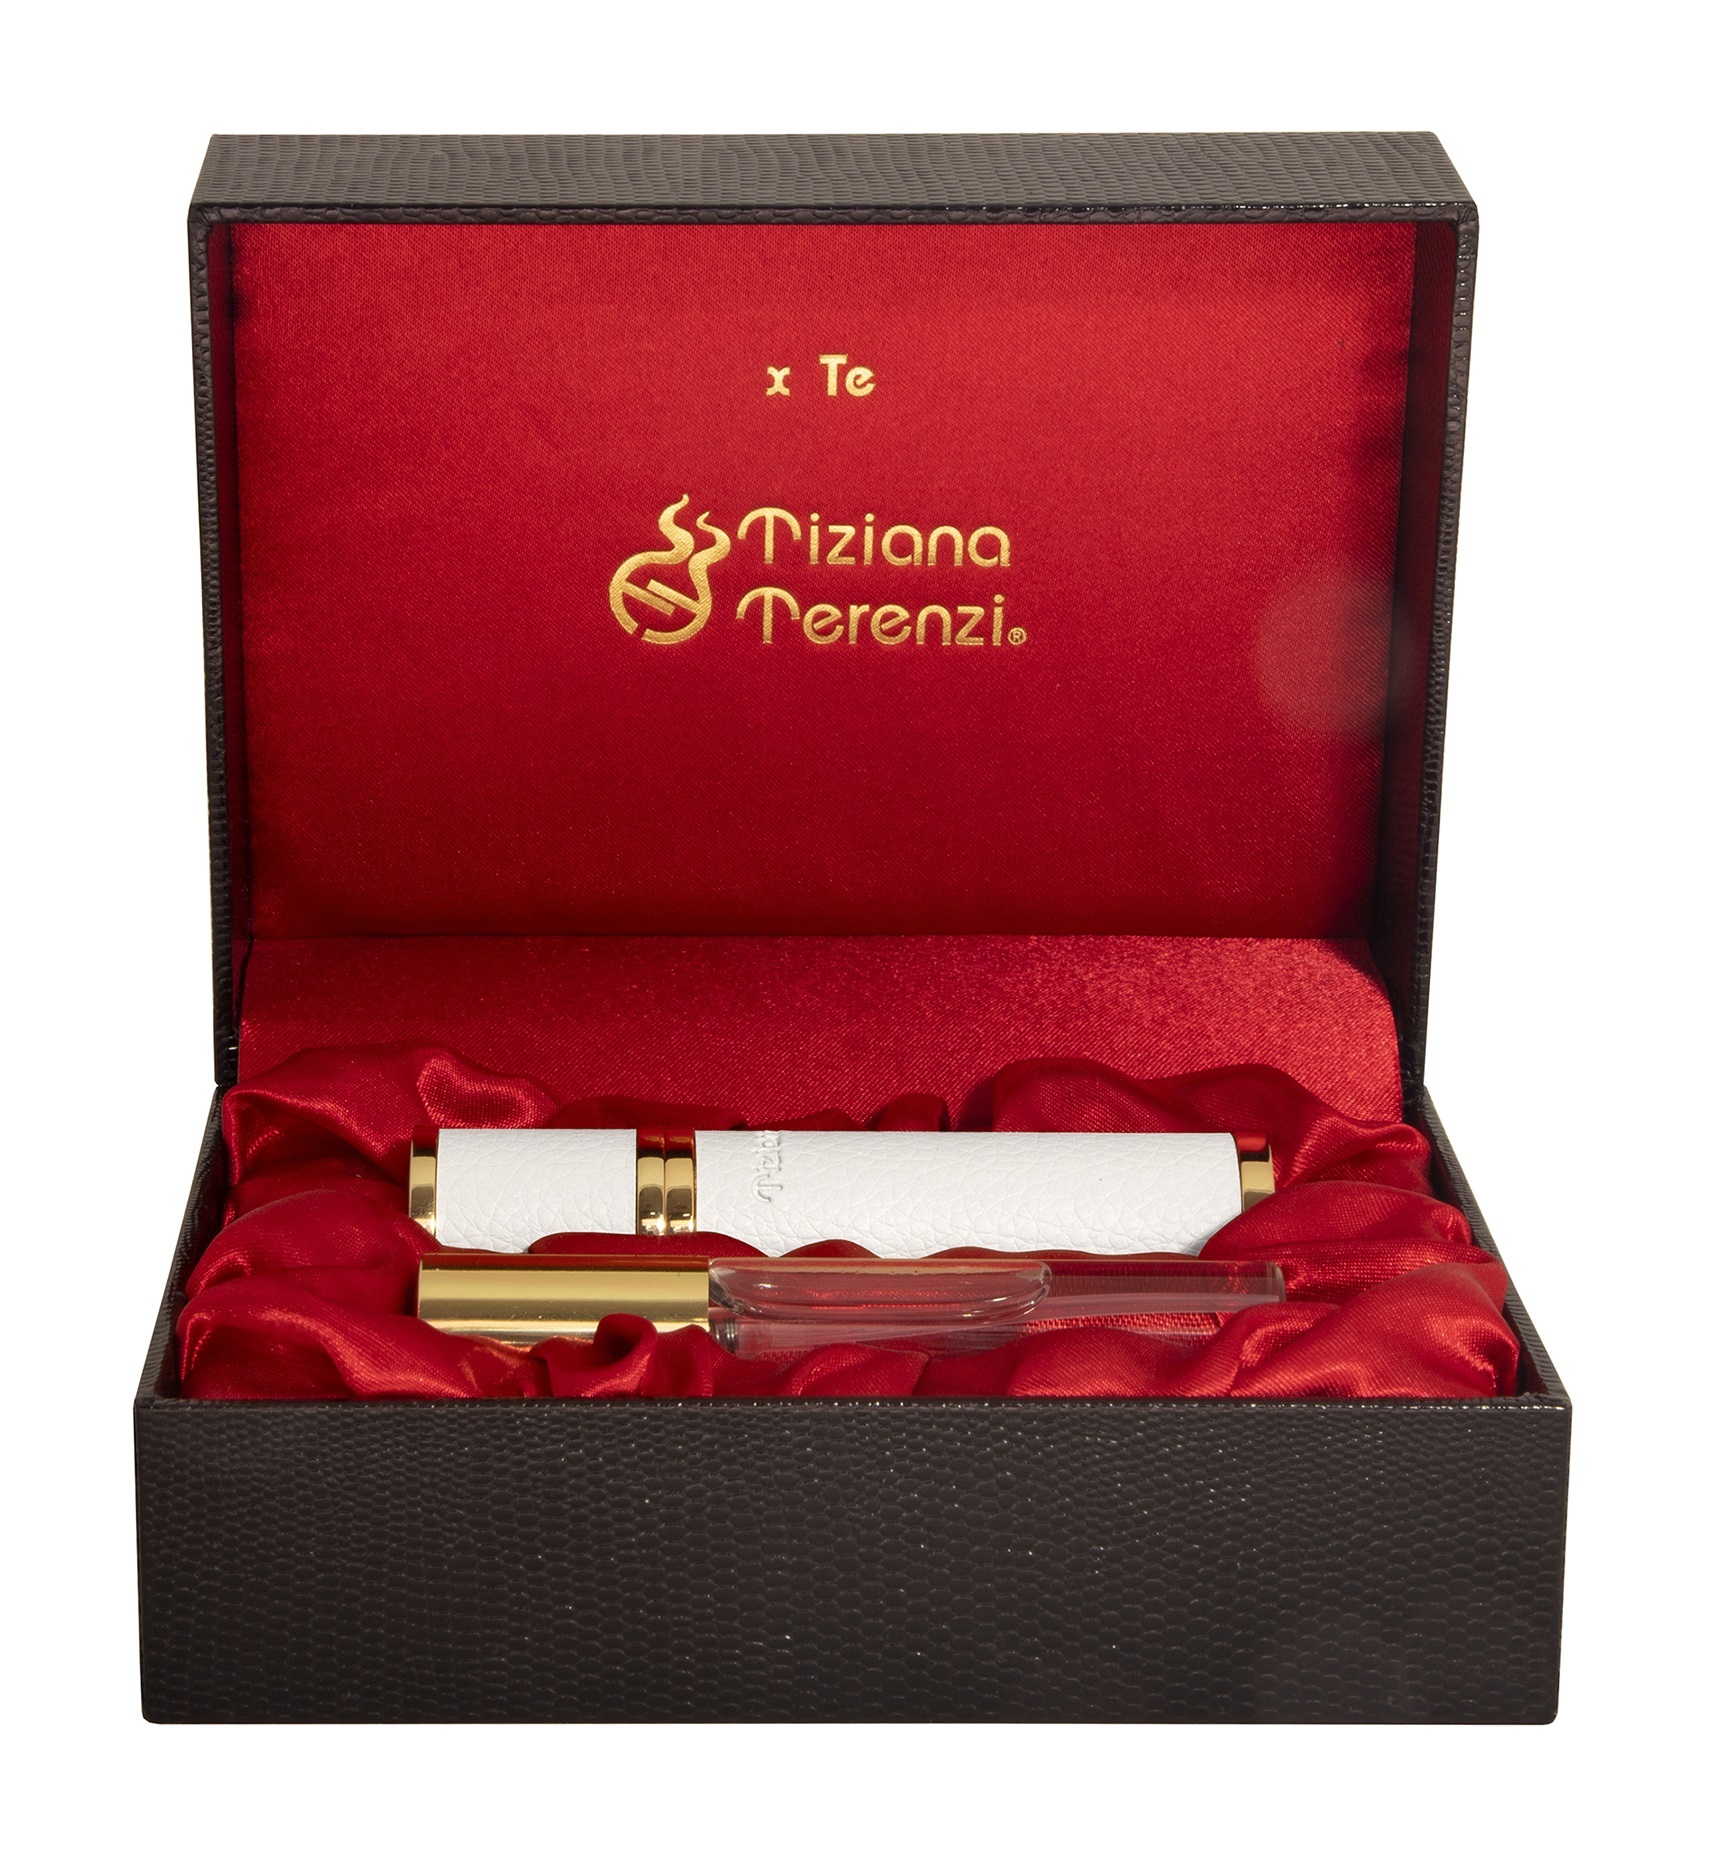 Набор Tiziana Terenzi Luna Collection Andromeda Luxury Box, 2 предмета парфюмерный набор tiziana terenzi luna collection orion luxury box set